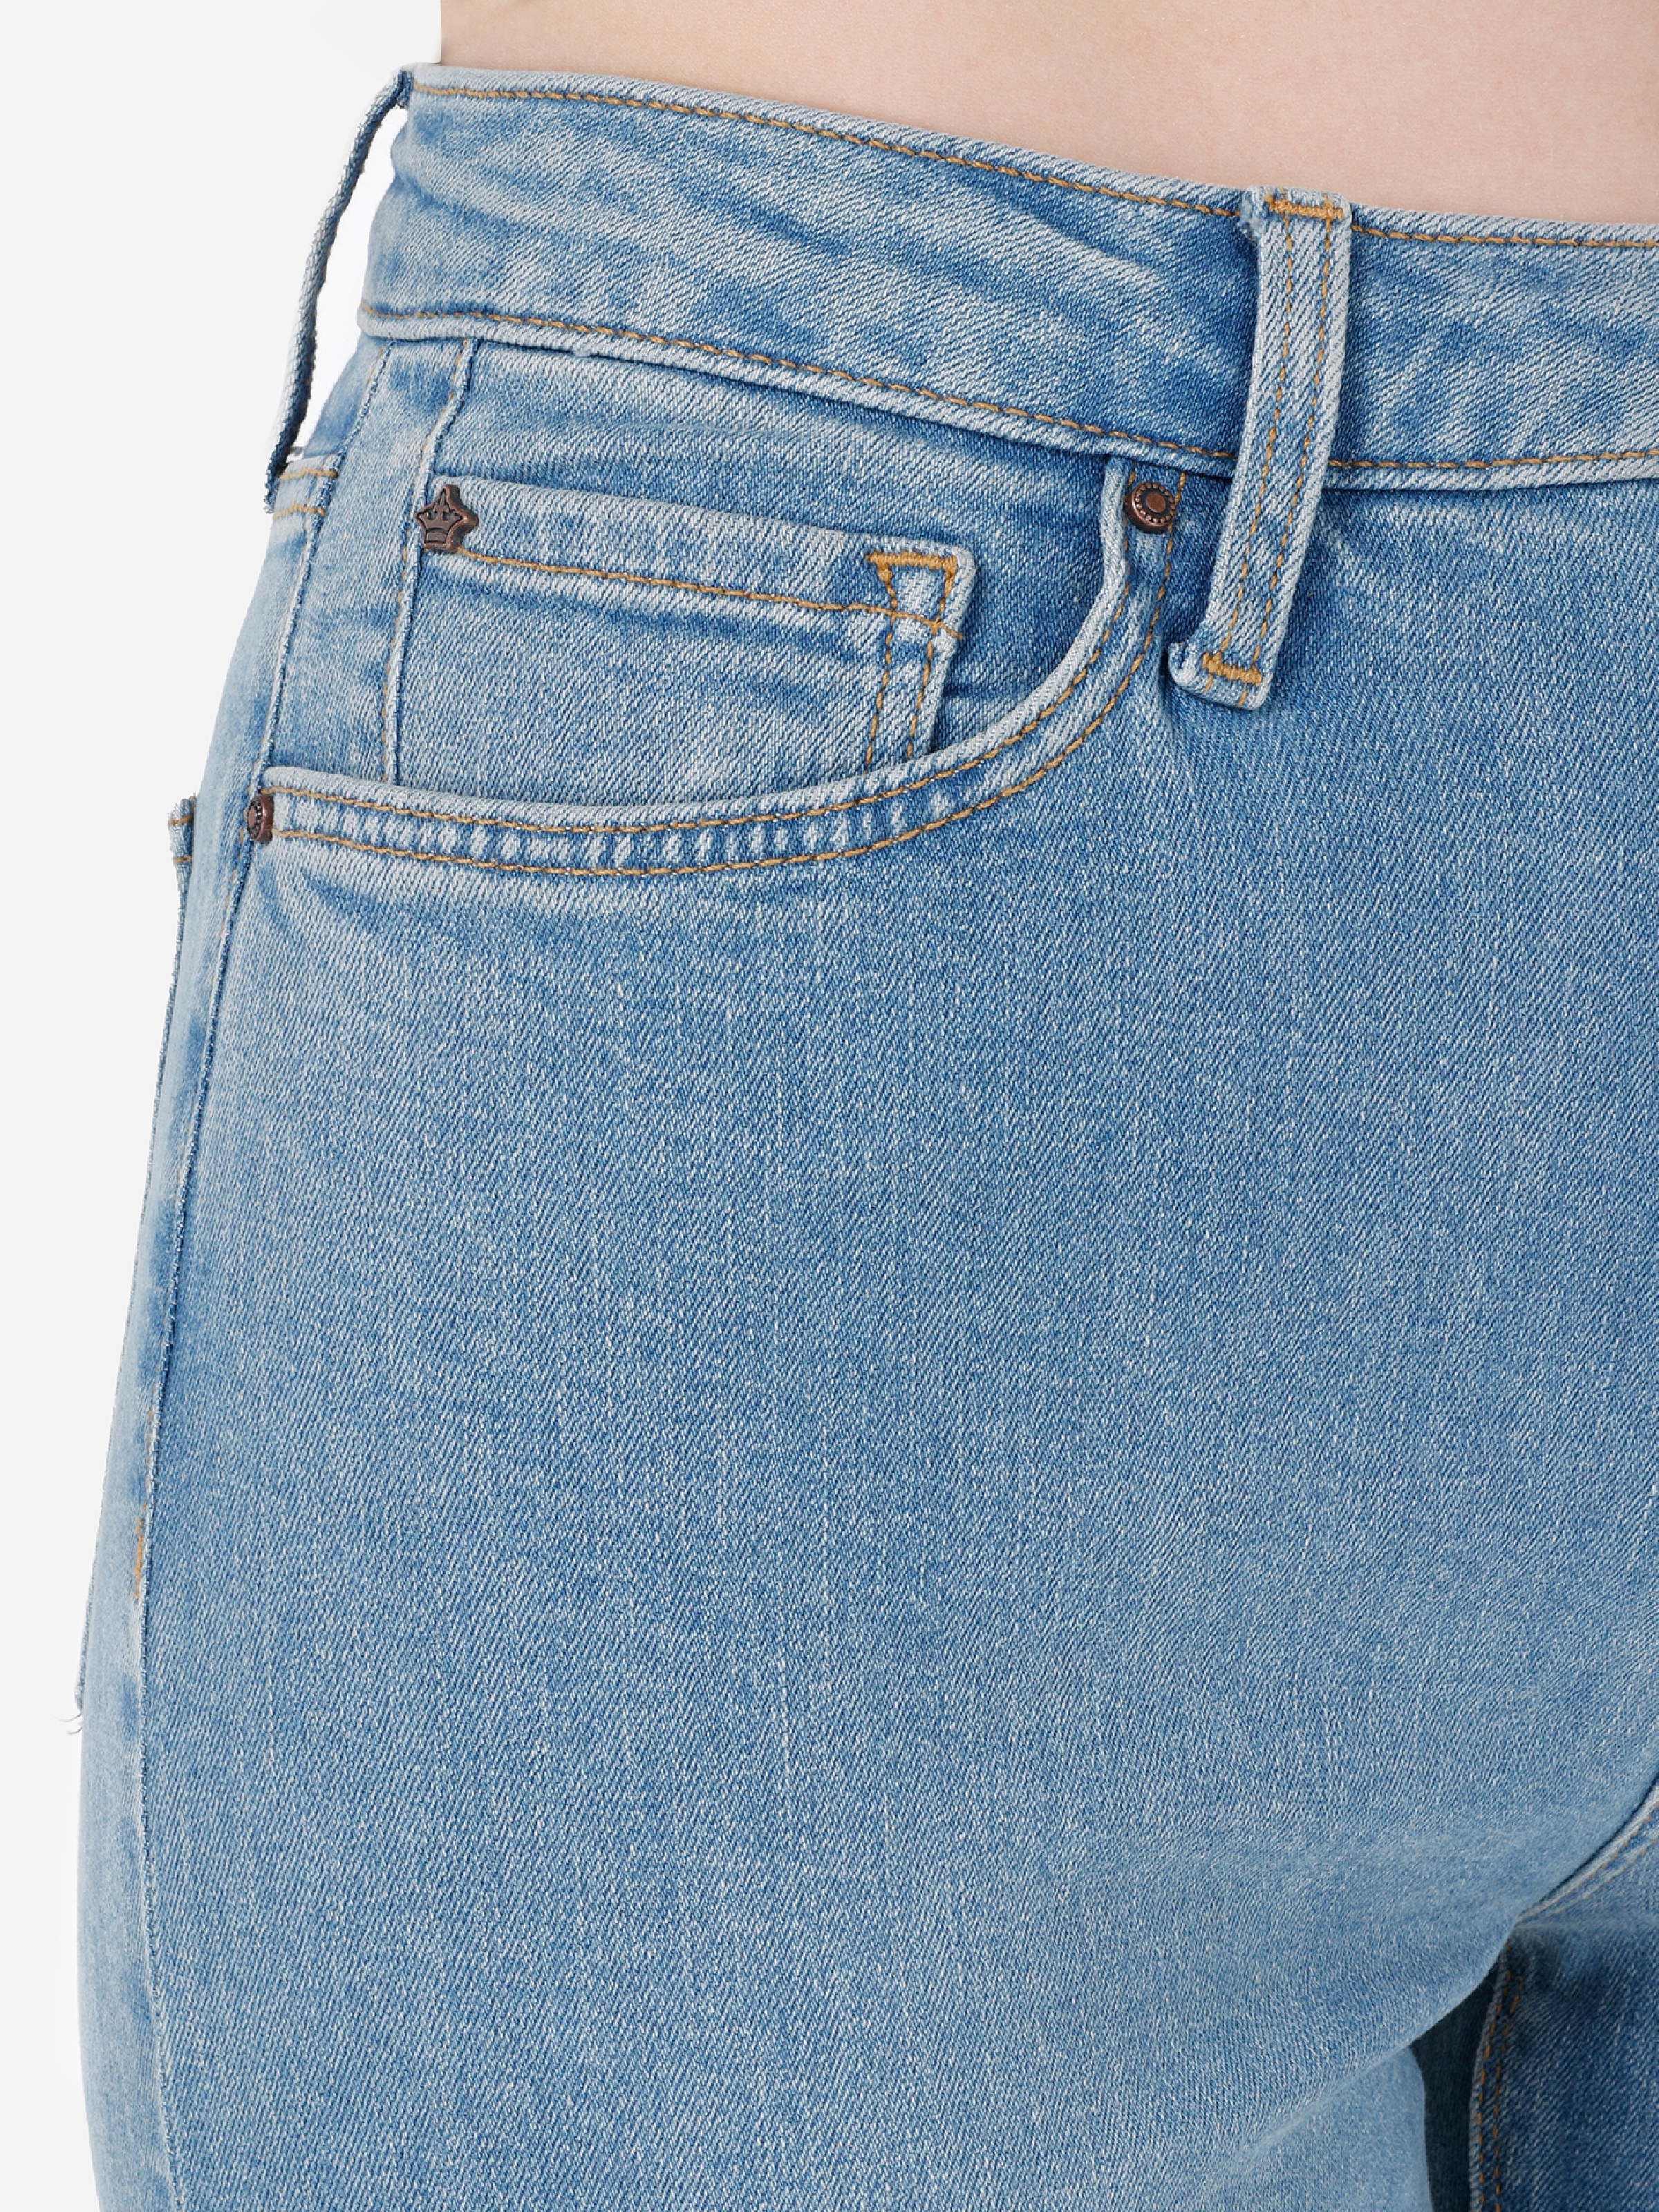 Afișați detalii pentru Pantaloni De Dama Denim Regular Fit 791 MONICA 